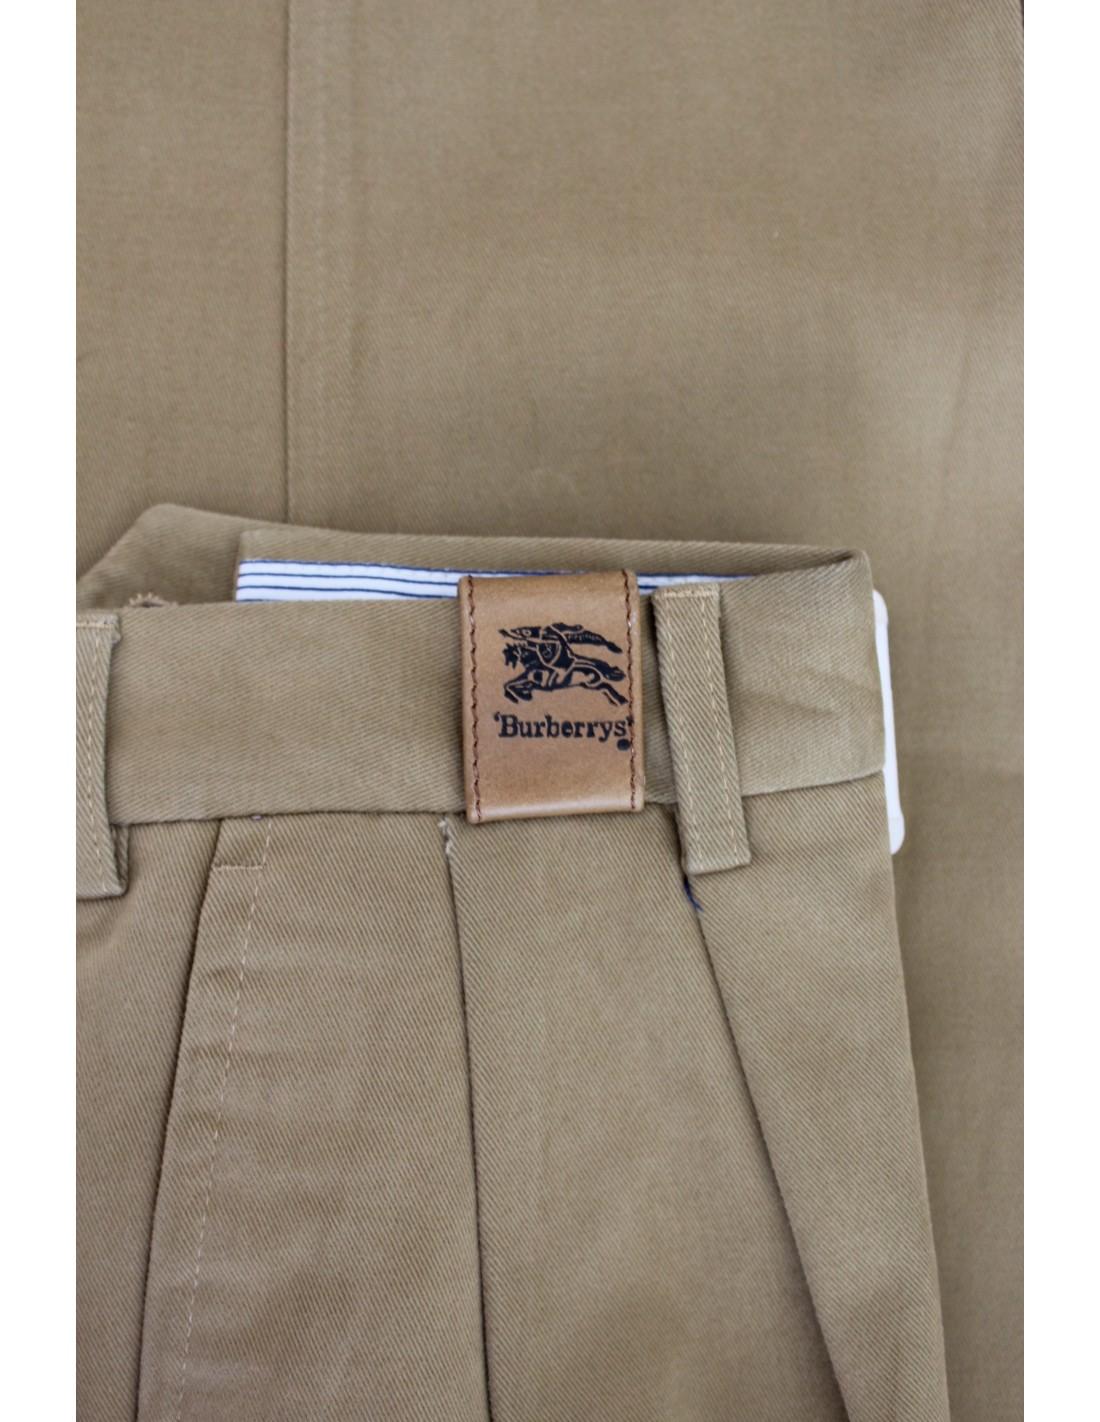 Burberry Beige Cotton Classic Pants 1